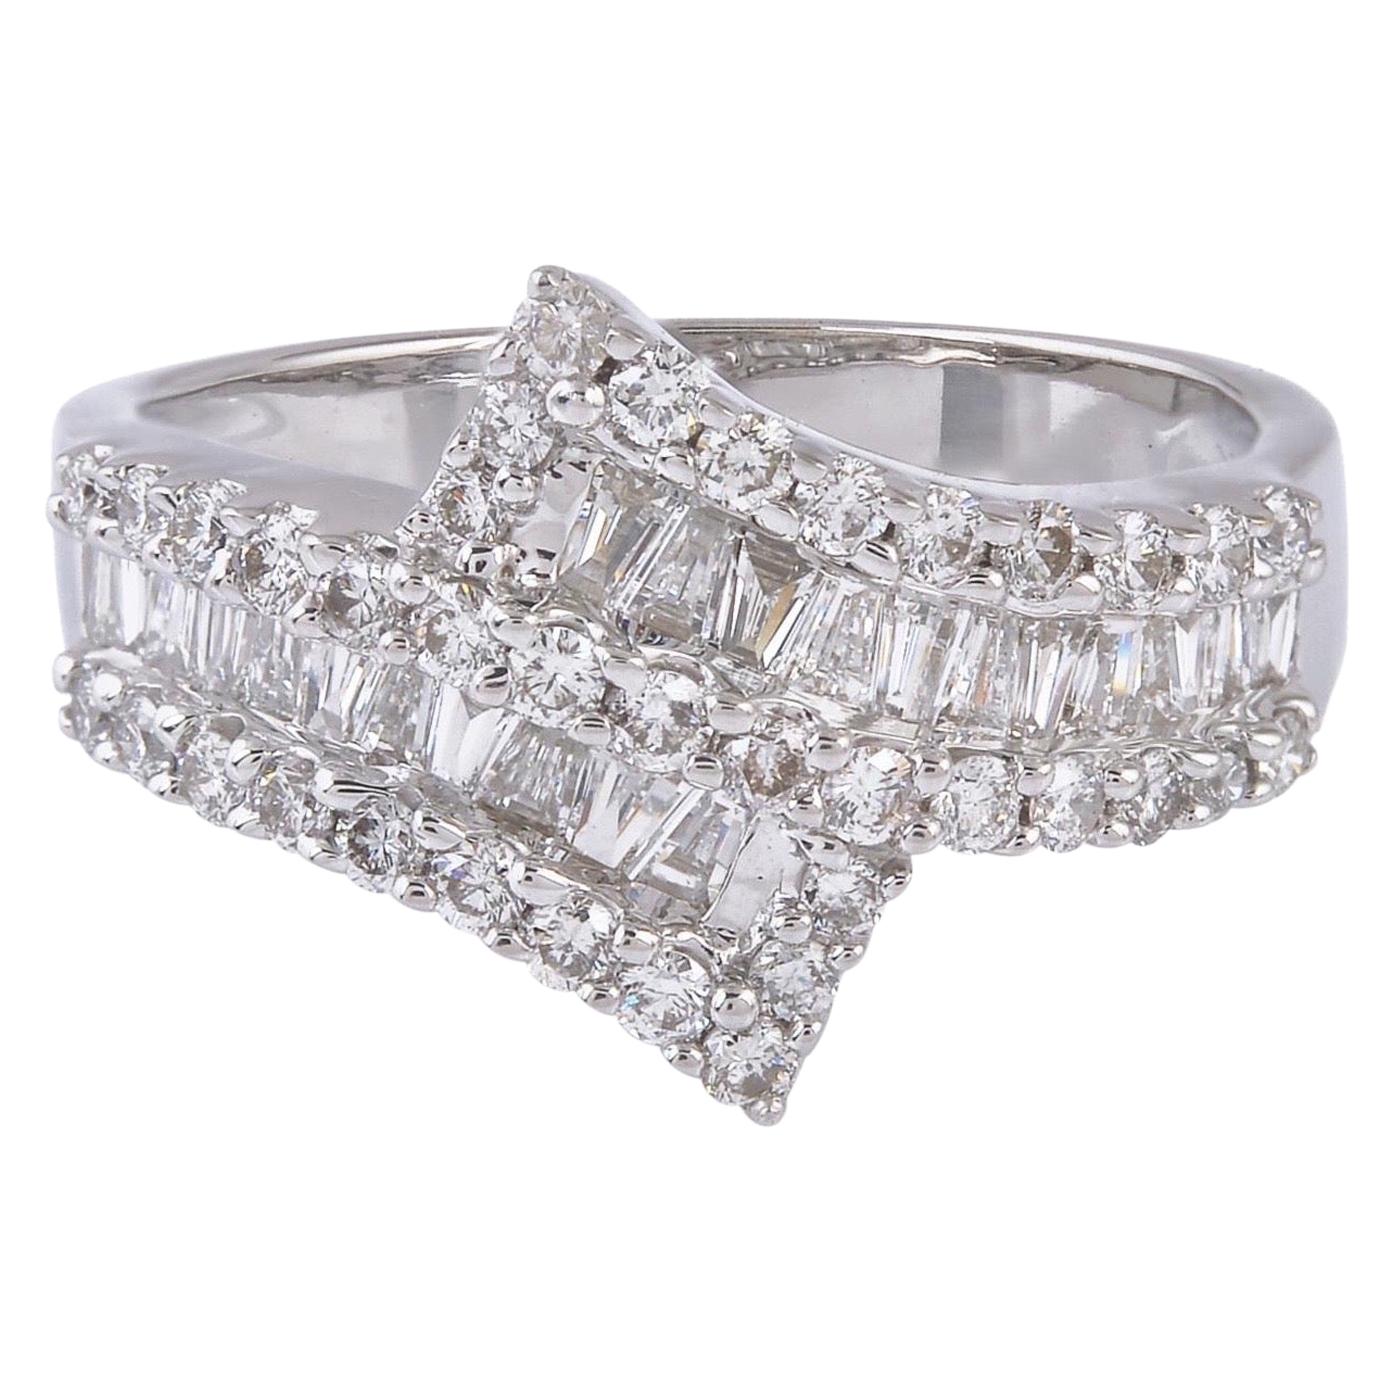 18 Karat Gold Diamond Engagement Ring